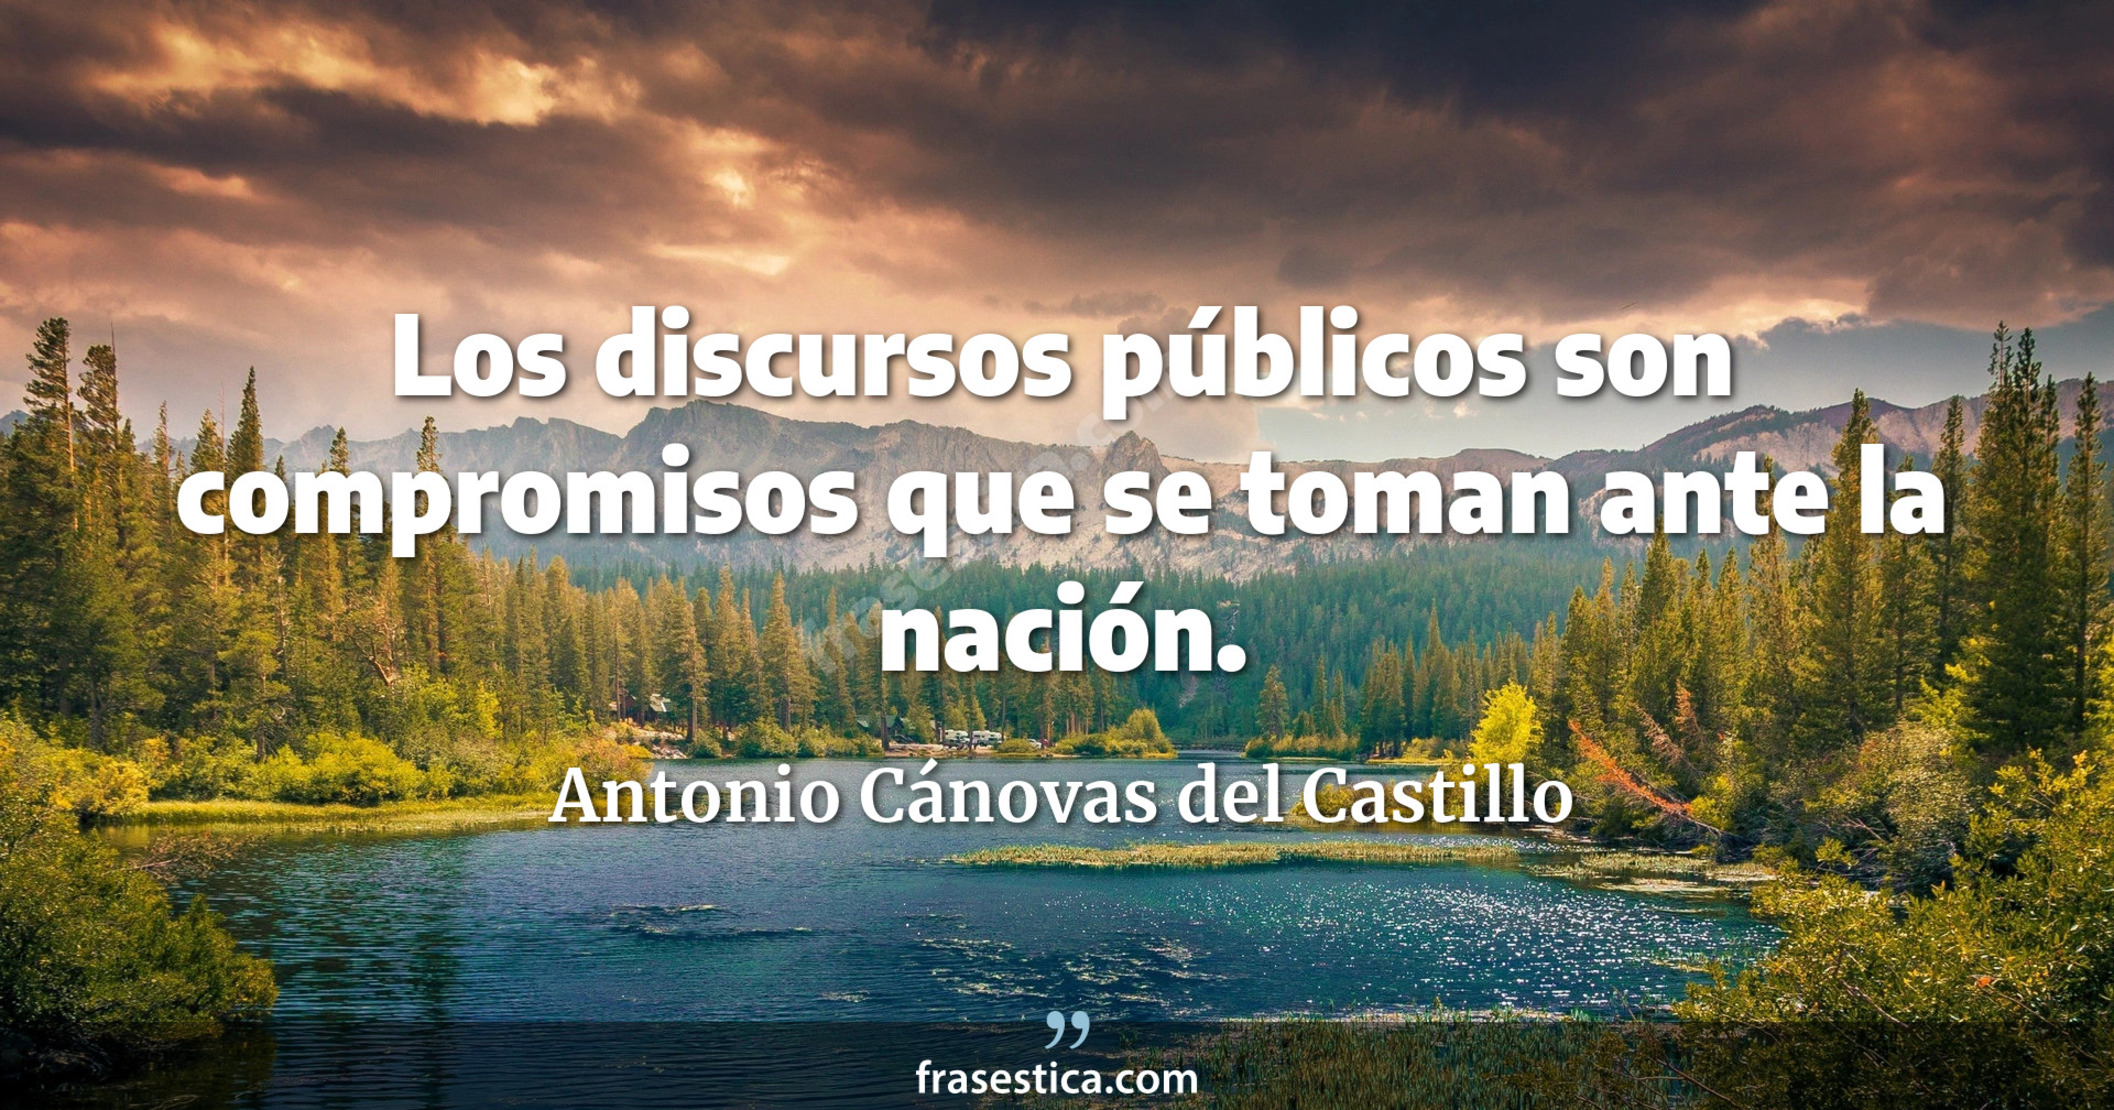 Los discursos públicos son compromisos que se toman ante la nación. - Antonio Cánovas del Castillo